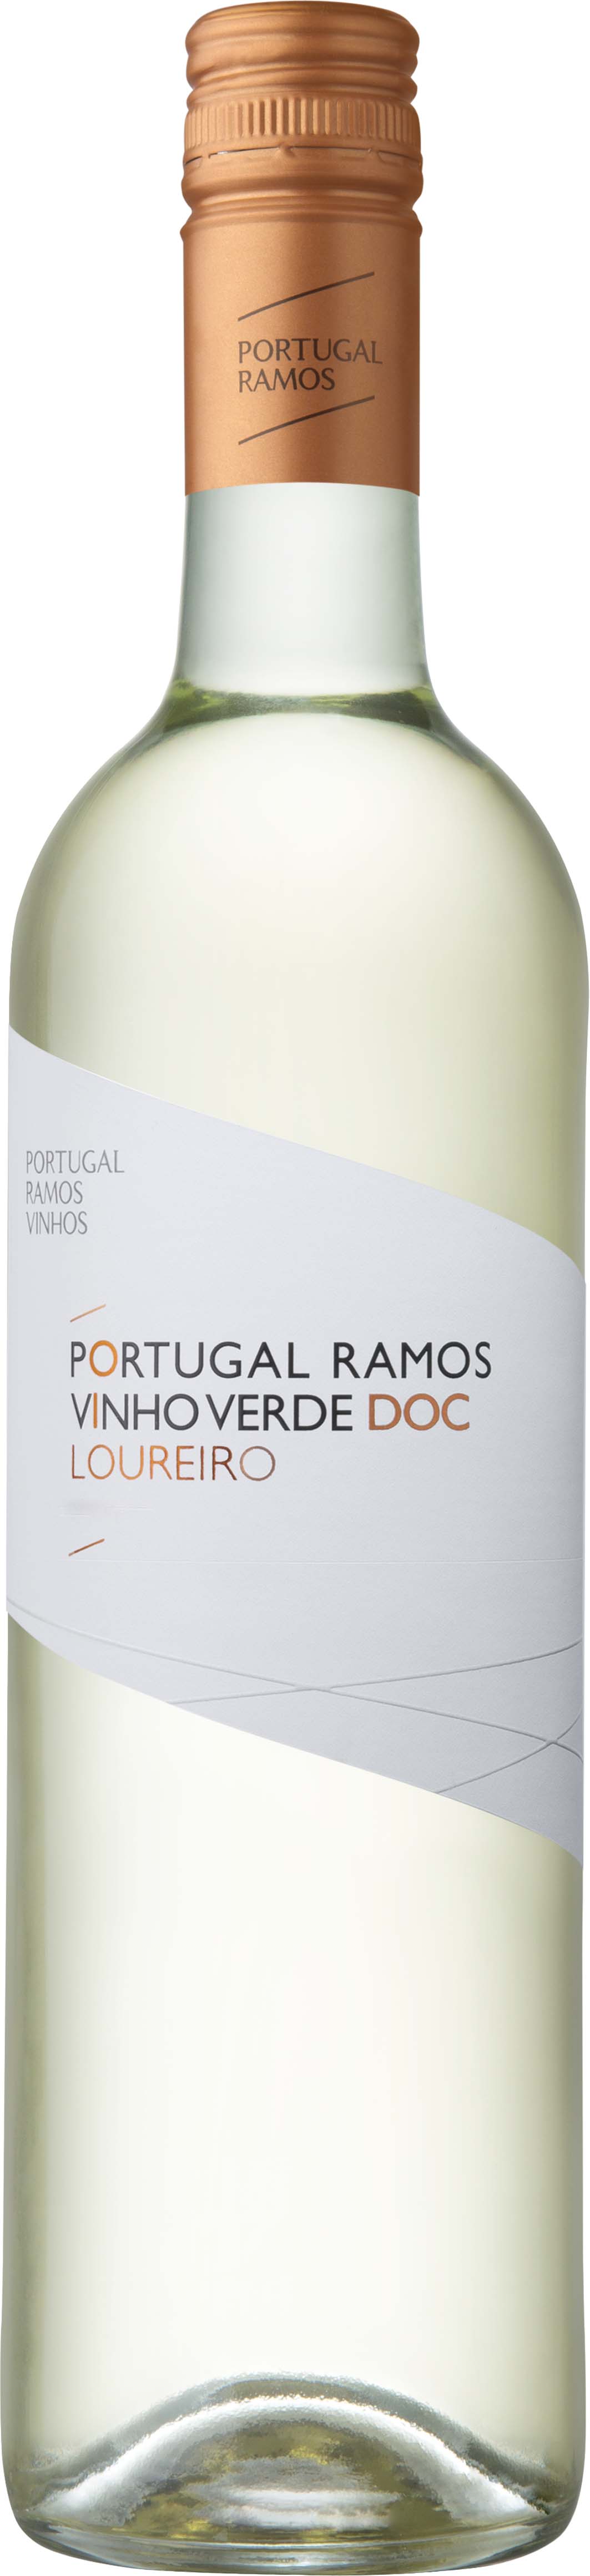 Joao Portugal Ramos Loureiro Vinho Verde 2019 750ml